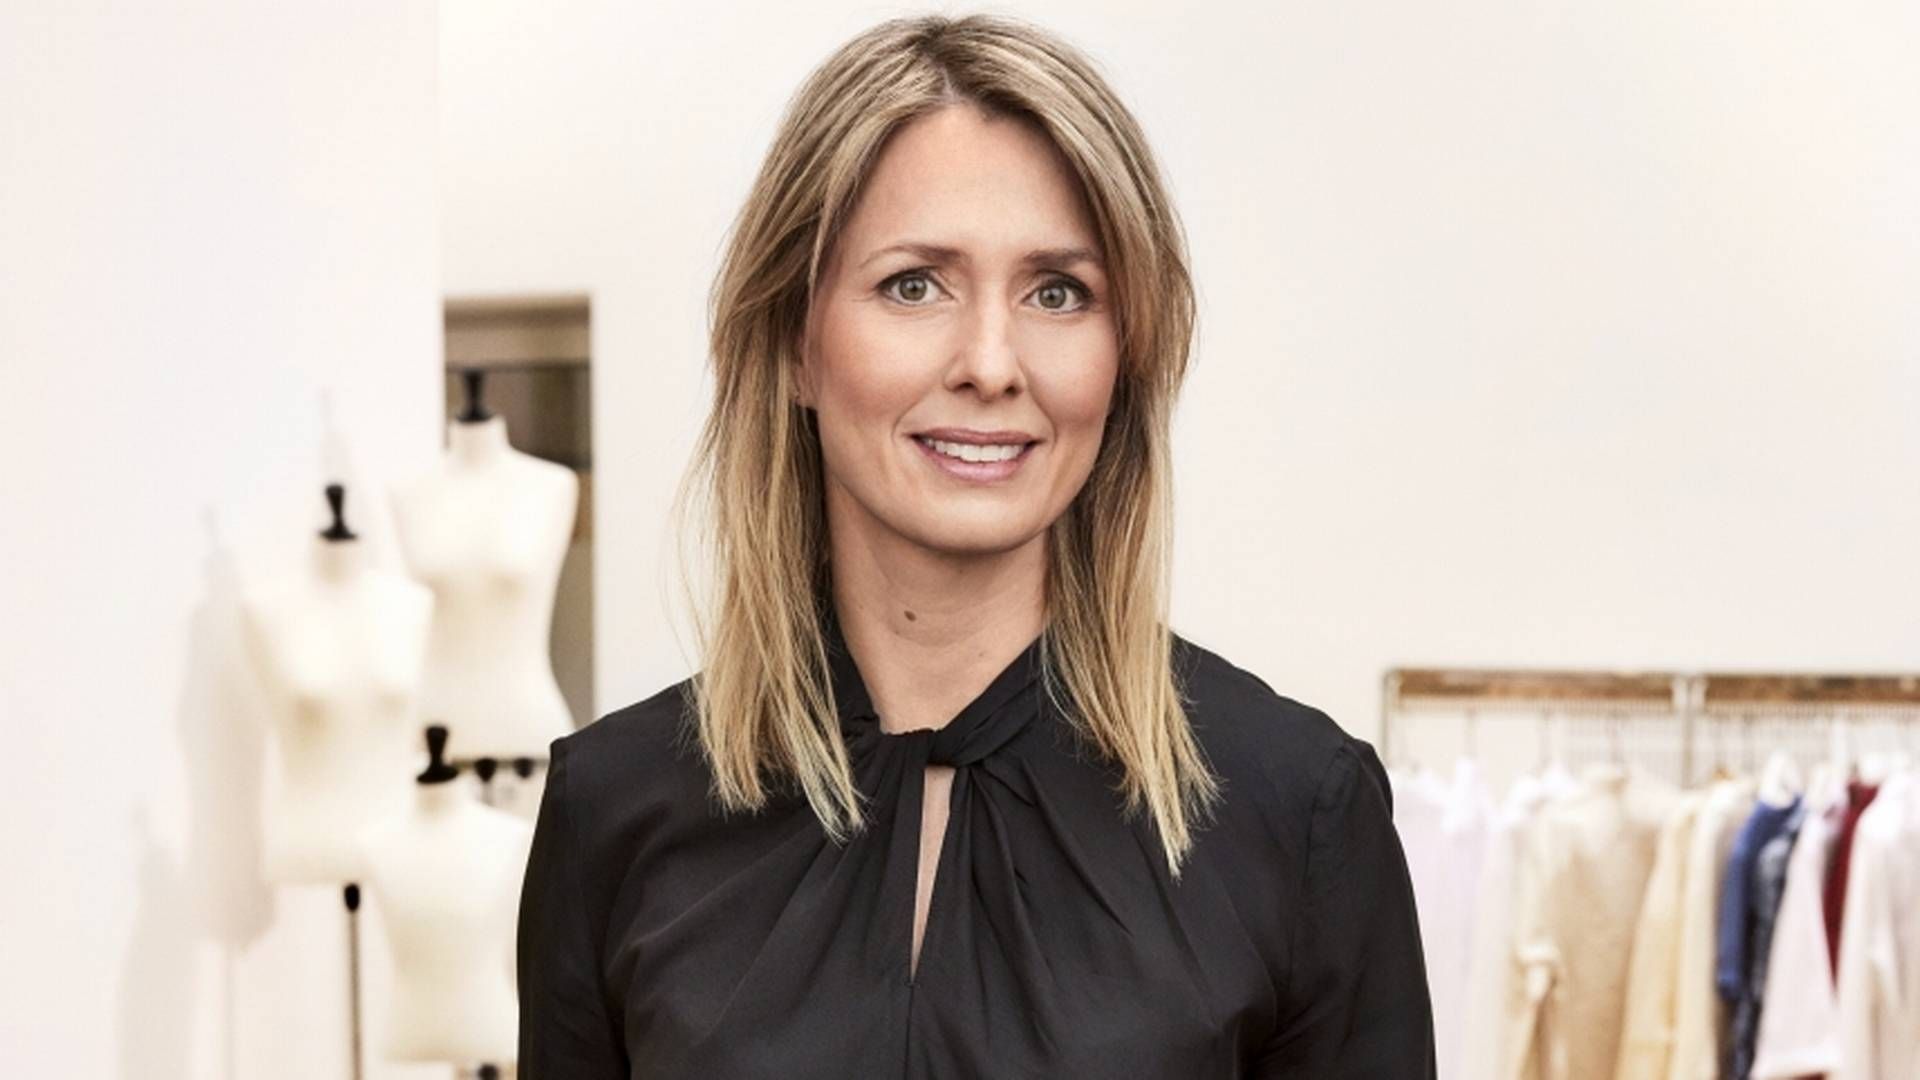 FORLATER: Helena Helmersson har bestemt seg for å forlate rollen som administrerende direktør i H&M. | Foto: H&M